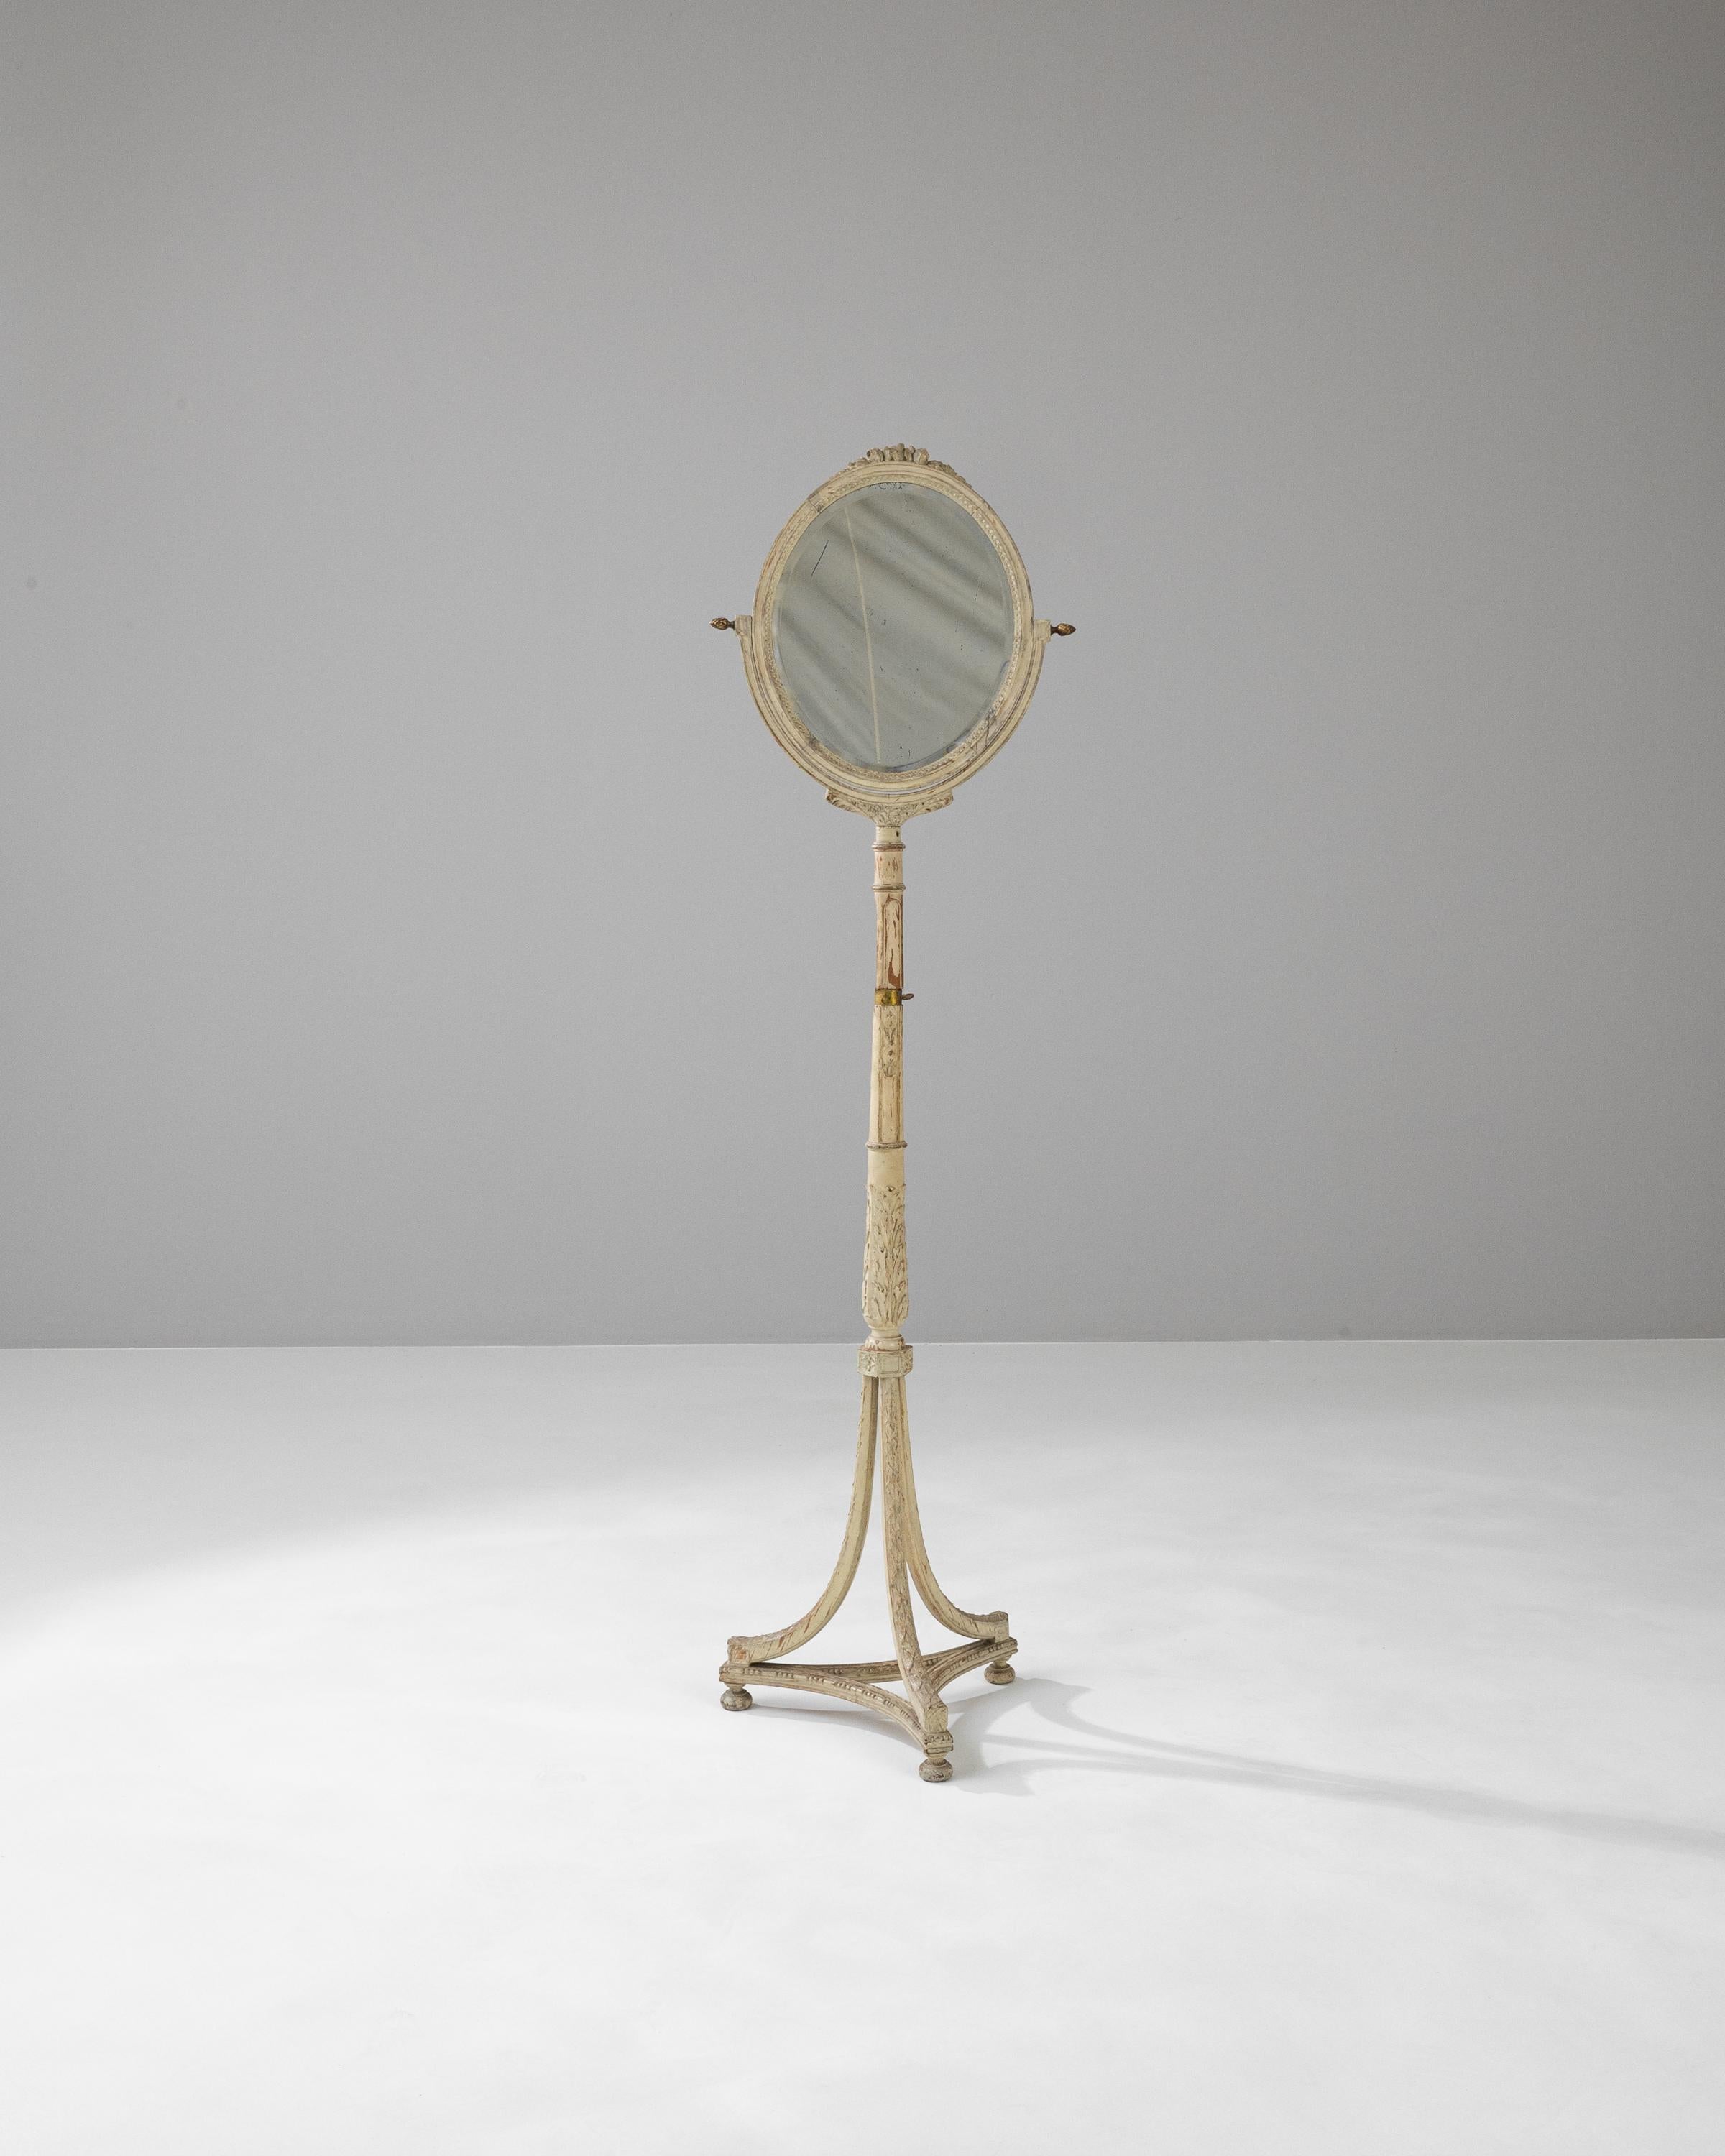 Versetzen Sie sich in die Eleganz des 19. Jahrhunderts zurück mit diesem exquisiten französischen Holzbodenspiegel. Die anmutig gealterte weiße Patina hebt die filigranen Schnitzereien an Rahmen und Ständer hervor. Der längliche, ovale Spiegel ist